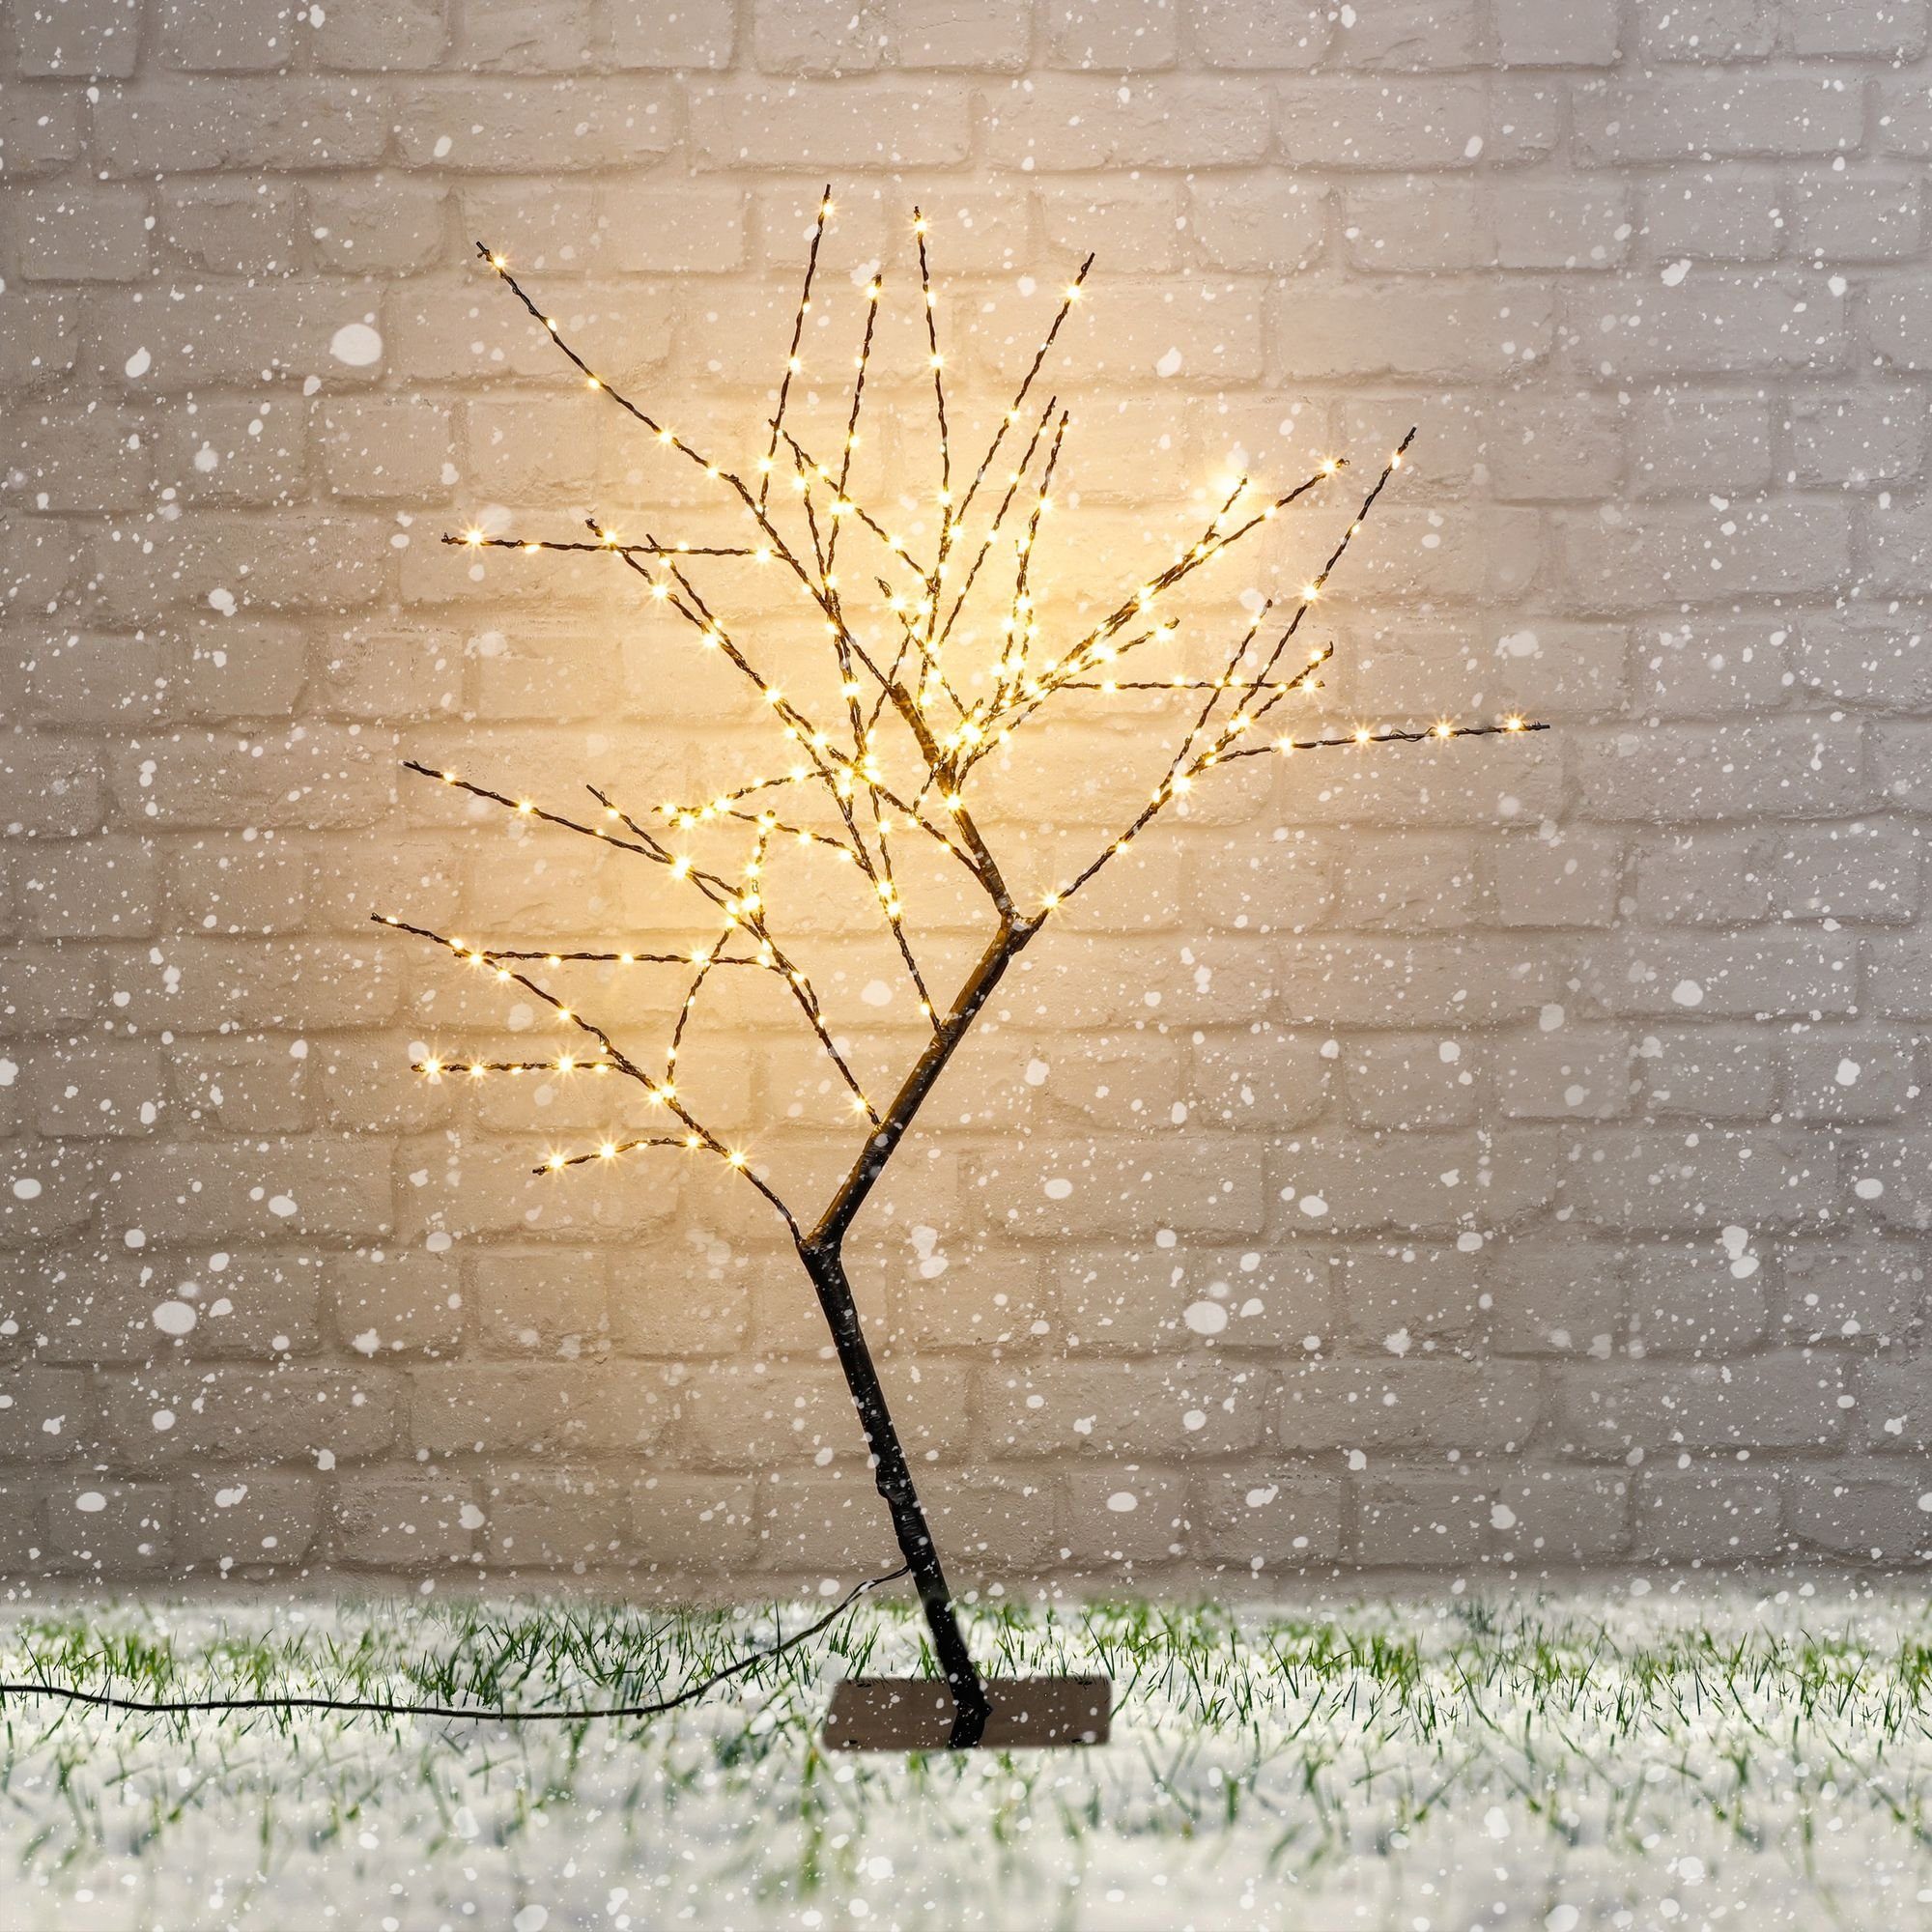 GartenHero Künstlicher Lichterbaum Weihnachten LEDs Lichtbaum, Weihnachtsbaum 80cm 198 Dekoration beleuchtet